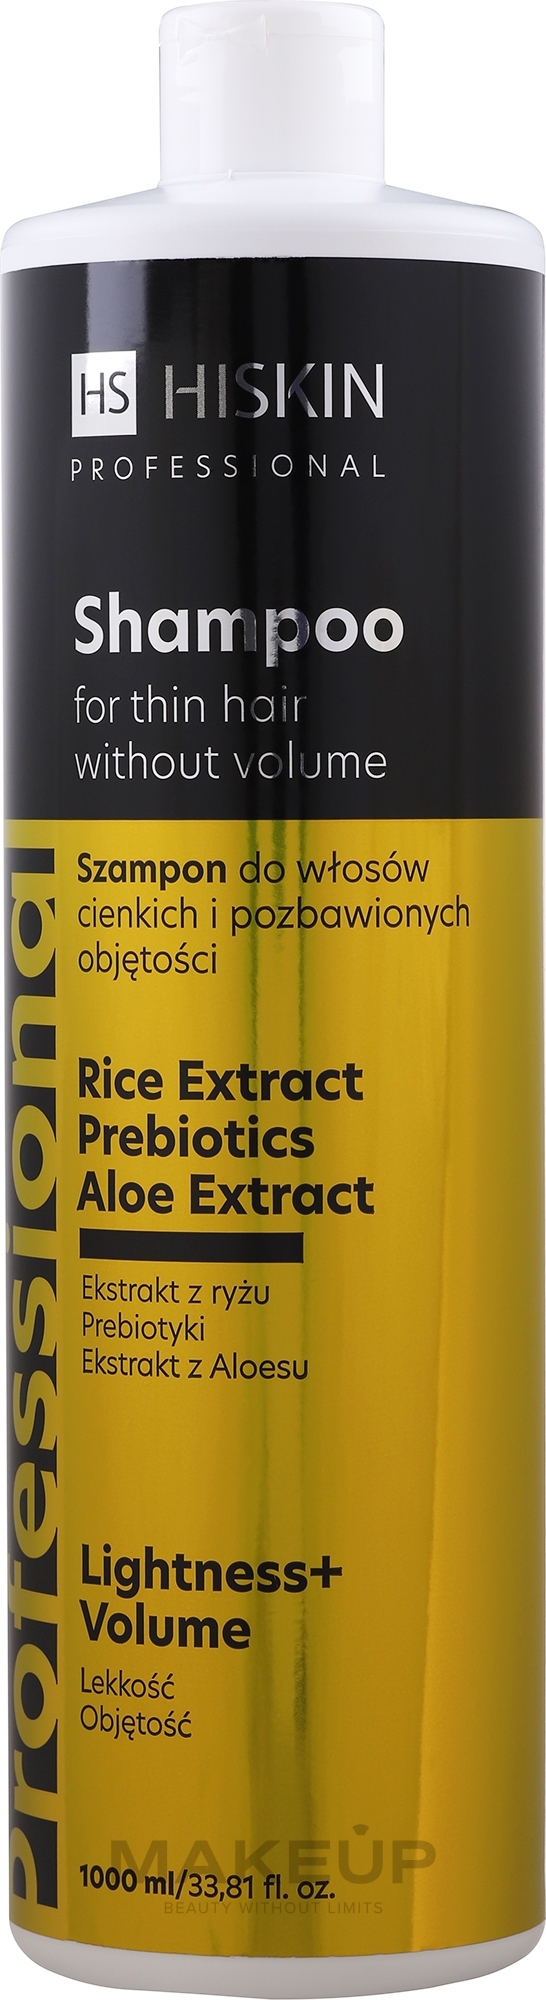 Volumengebendes Shampoo für dünnes Haar mit Aloe Vera-Extrakt und Limette - HiSkin Professional Shampoo — Bild 1000 ml